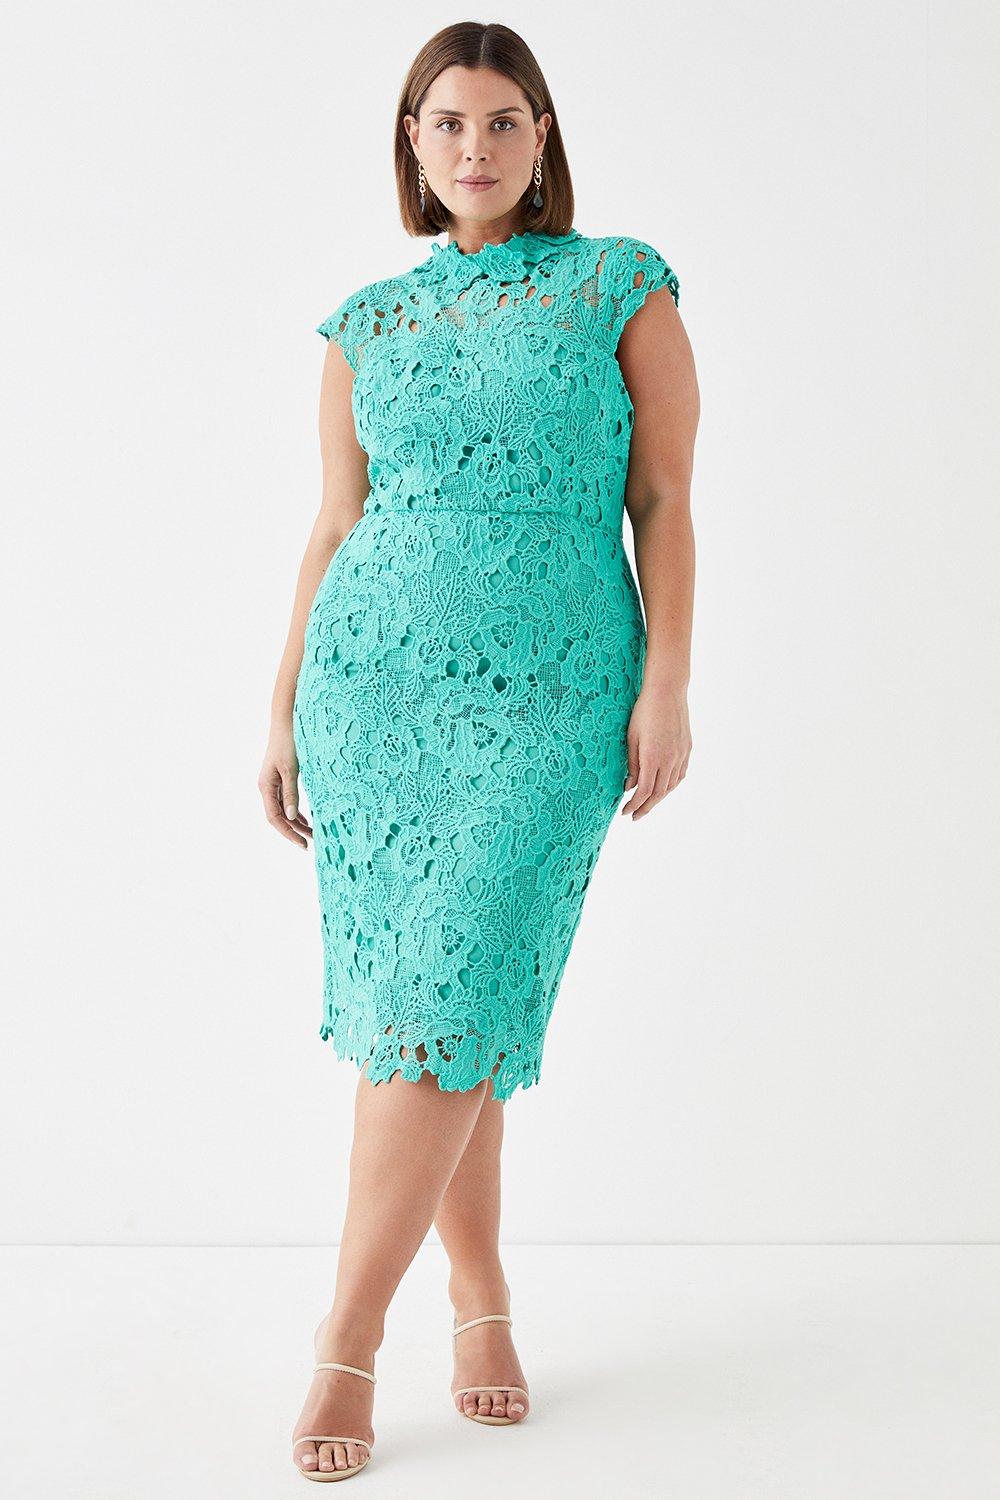 Plus Size Lace Pencil Dress With Applique Neckline - Green